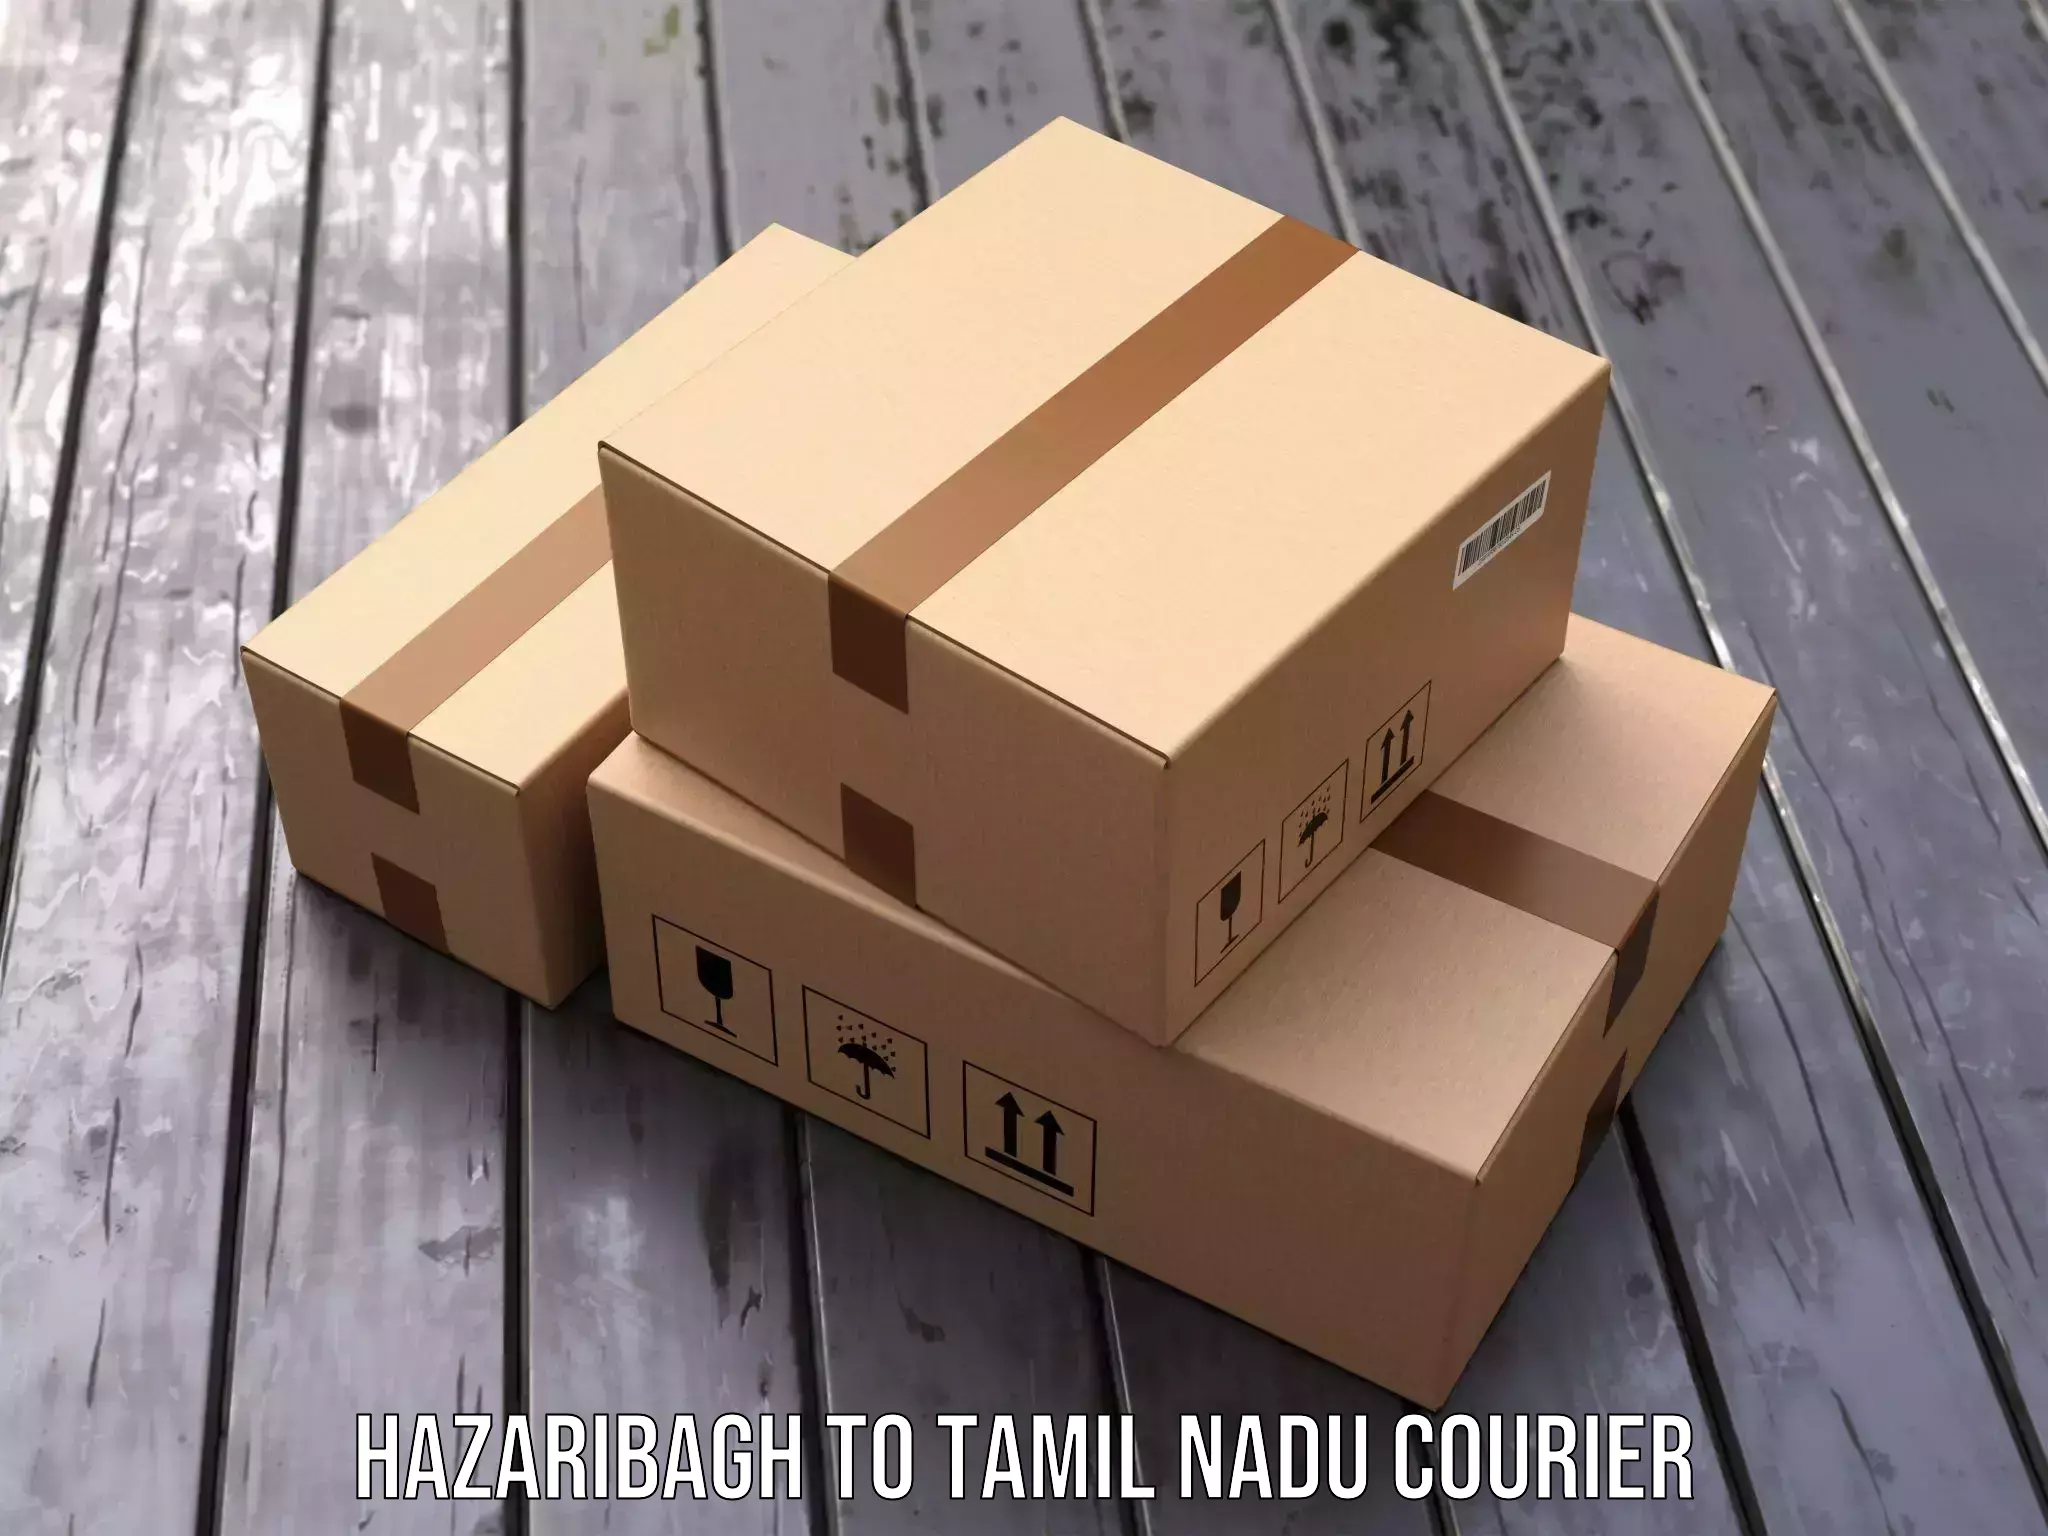 Courier service comparison Hazaribagh to Rameswaram